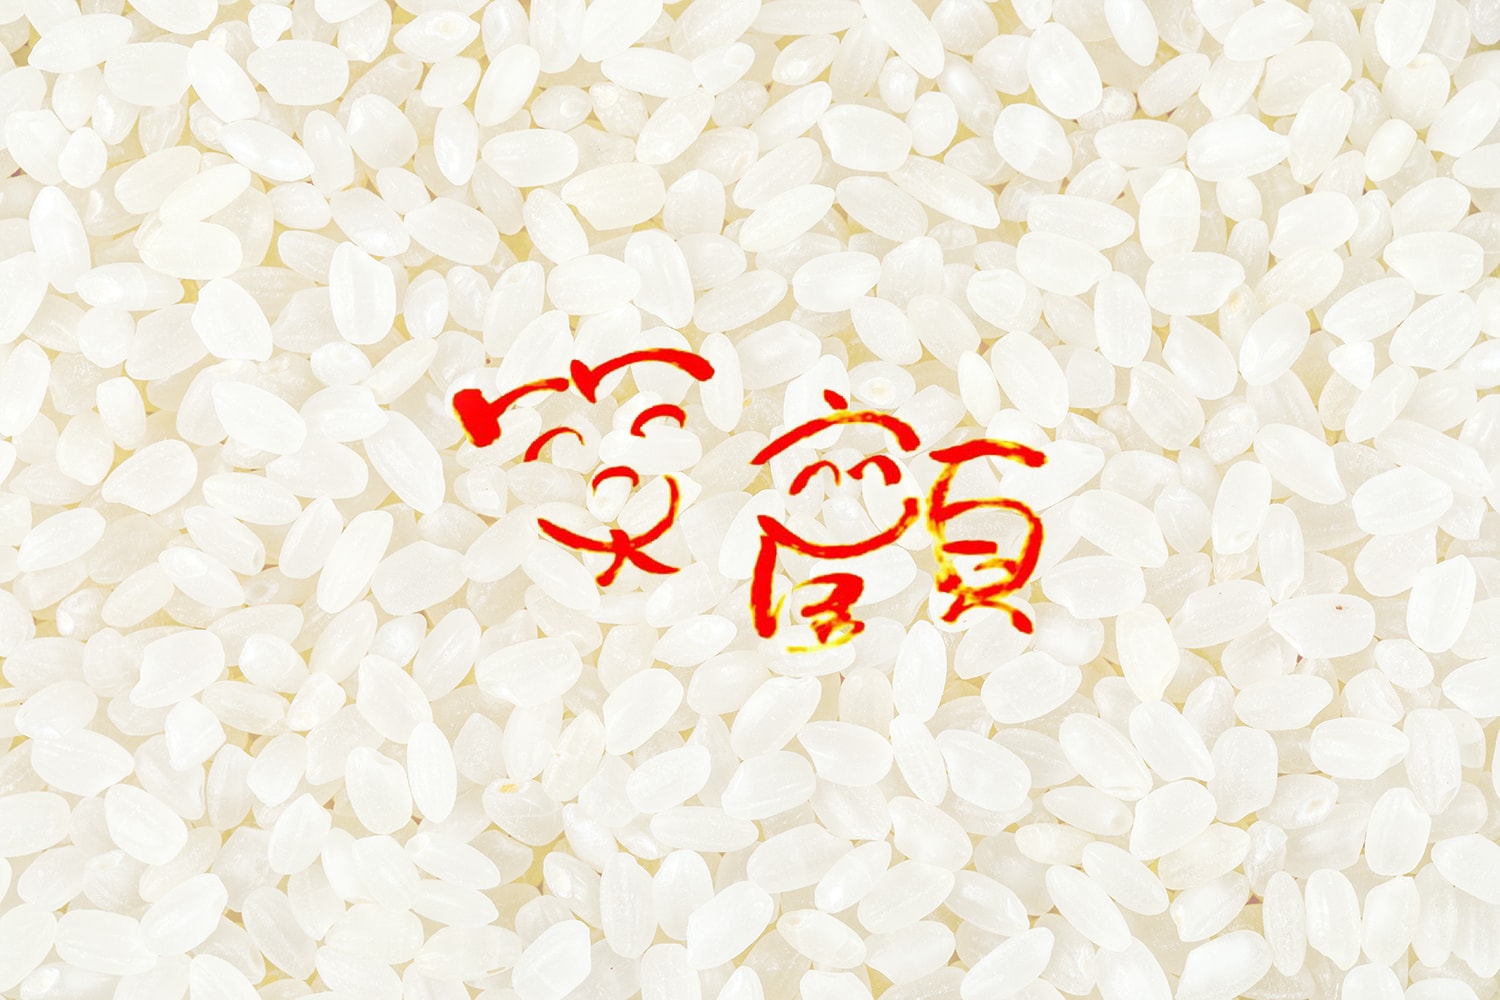 お米の画像